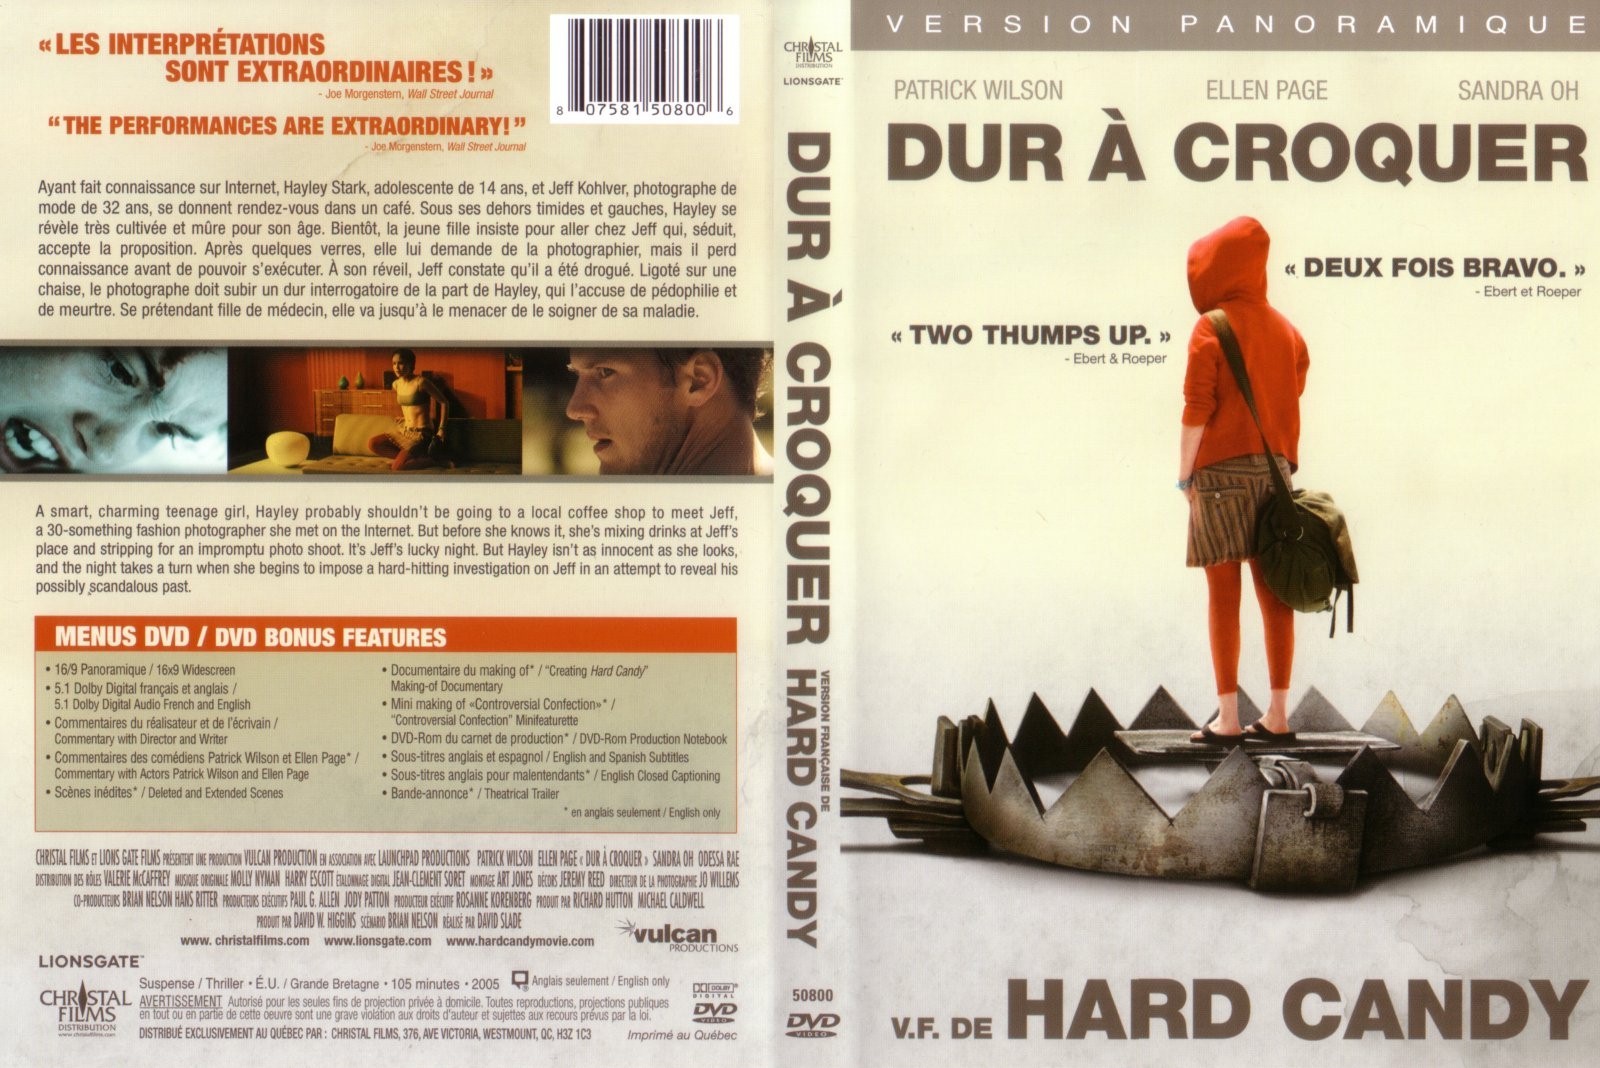 Jaquette DVD Dur  croquer